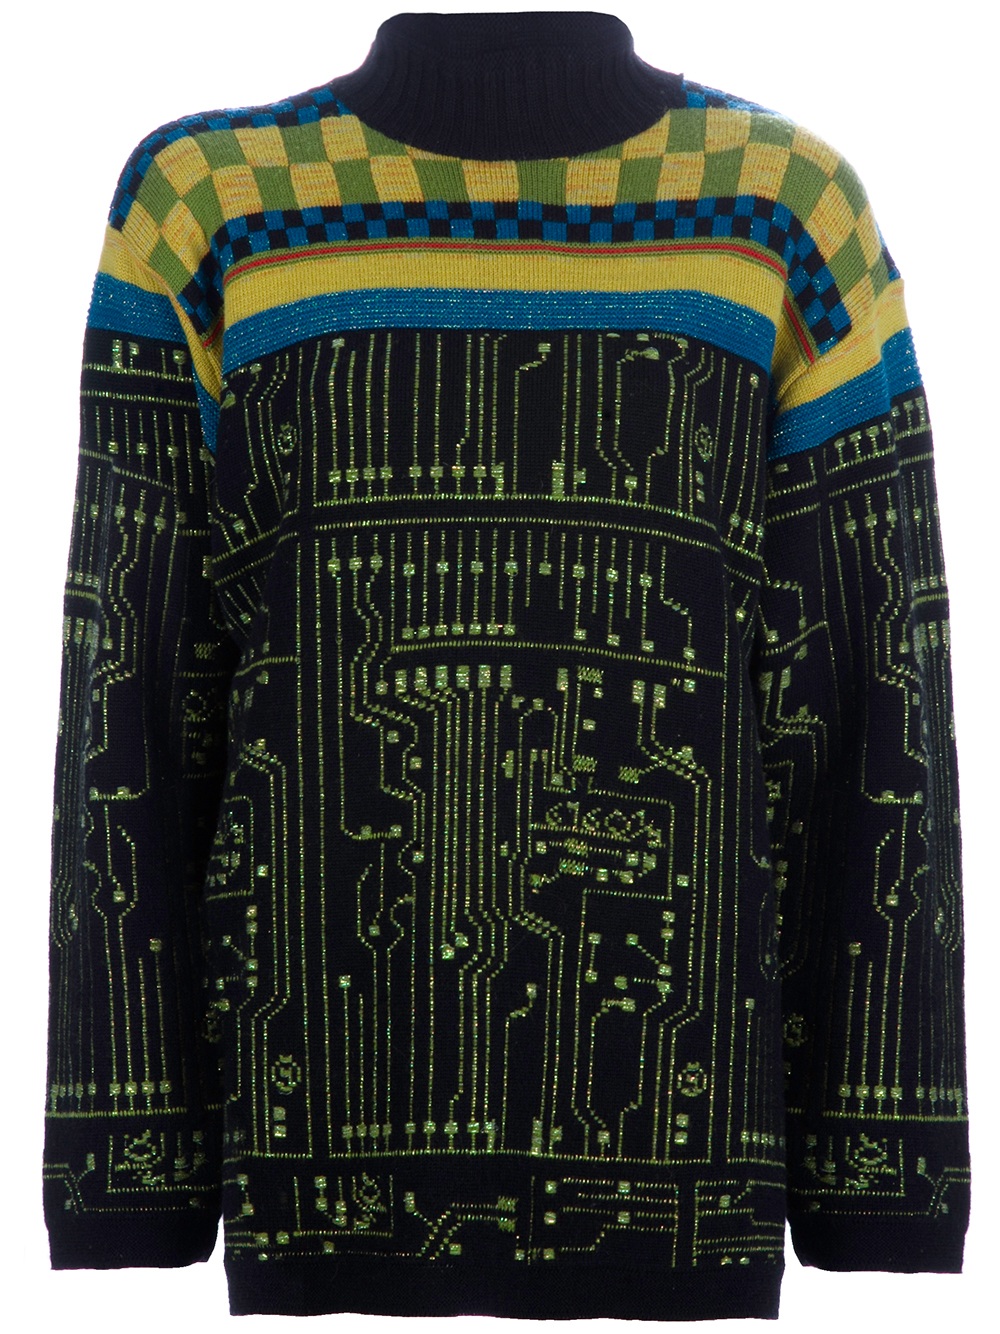 Jean Paul Gaultier Circuit Board Sweater in Black - Lyst